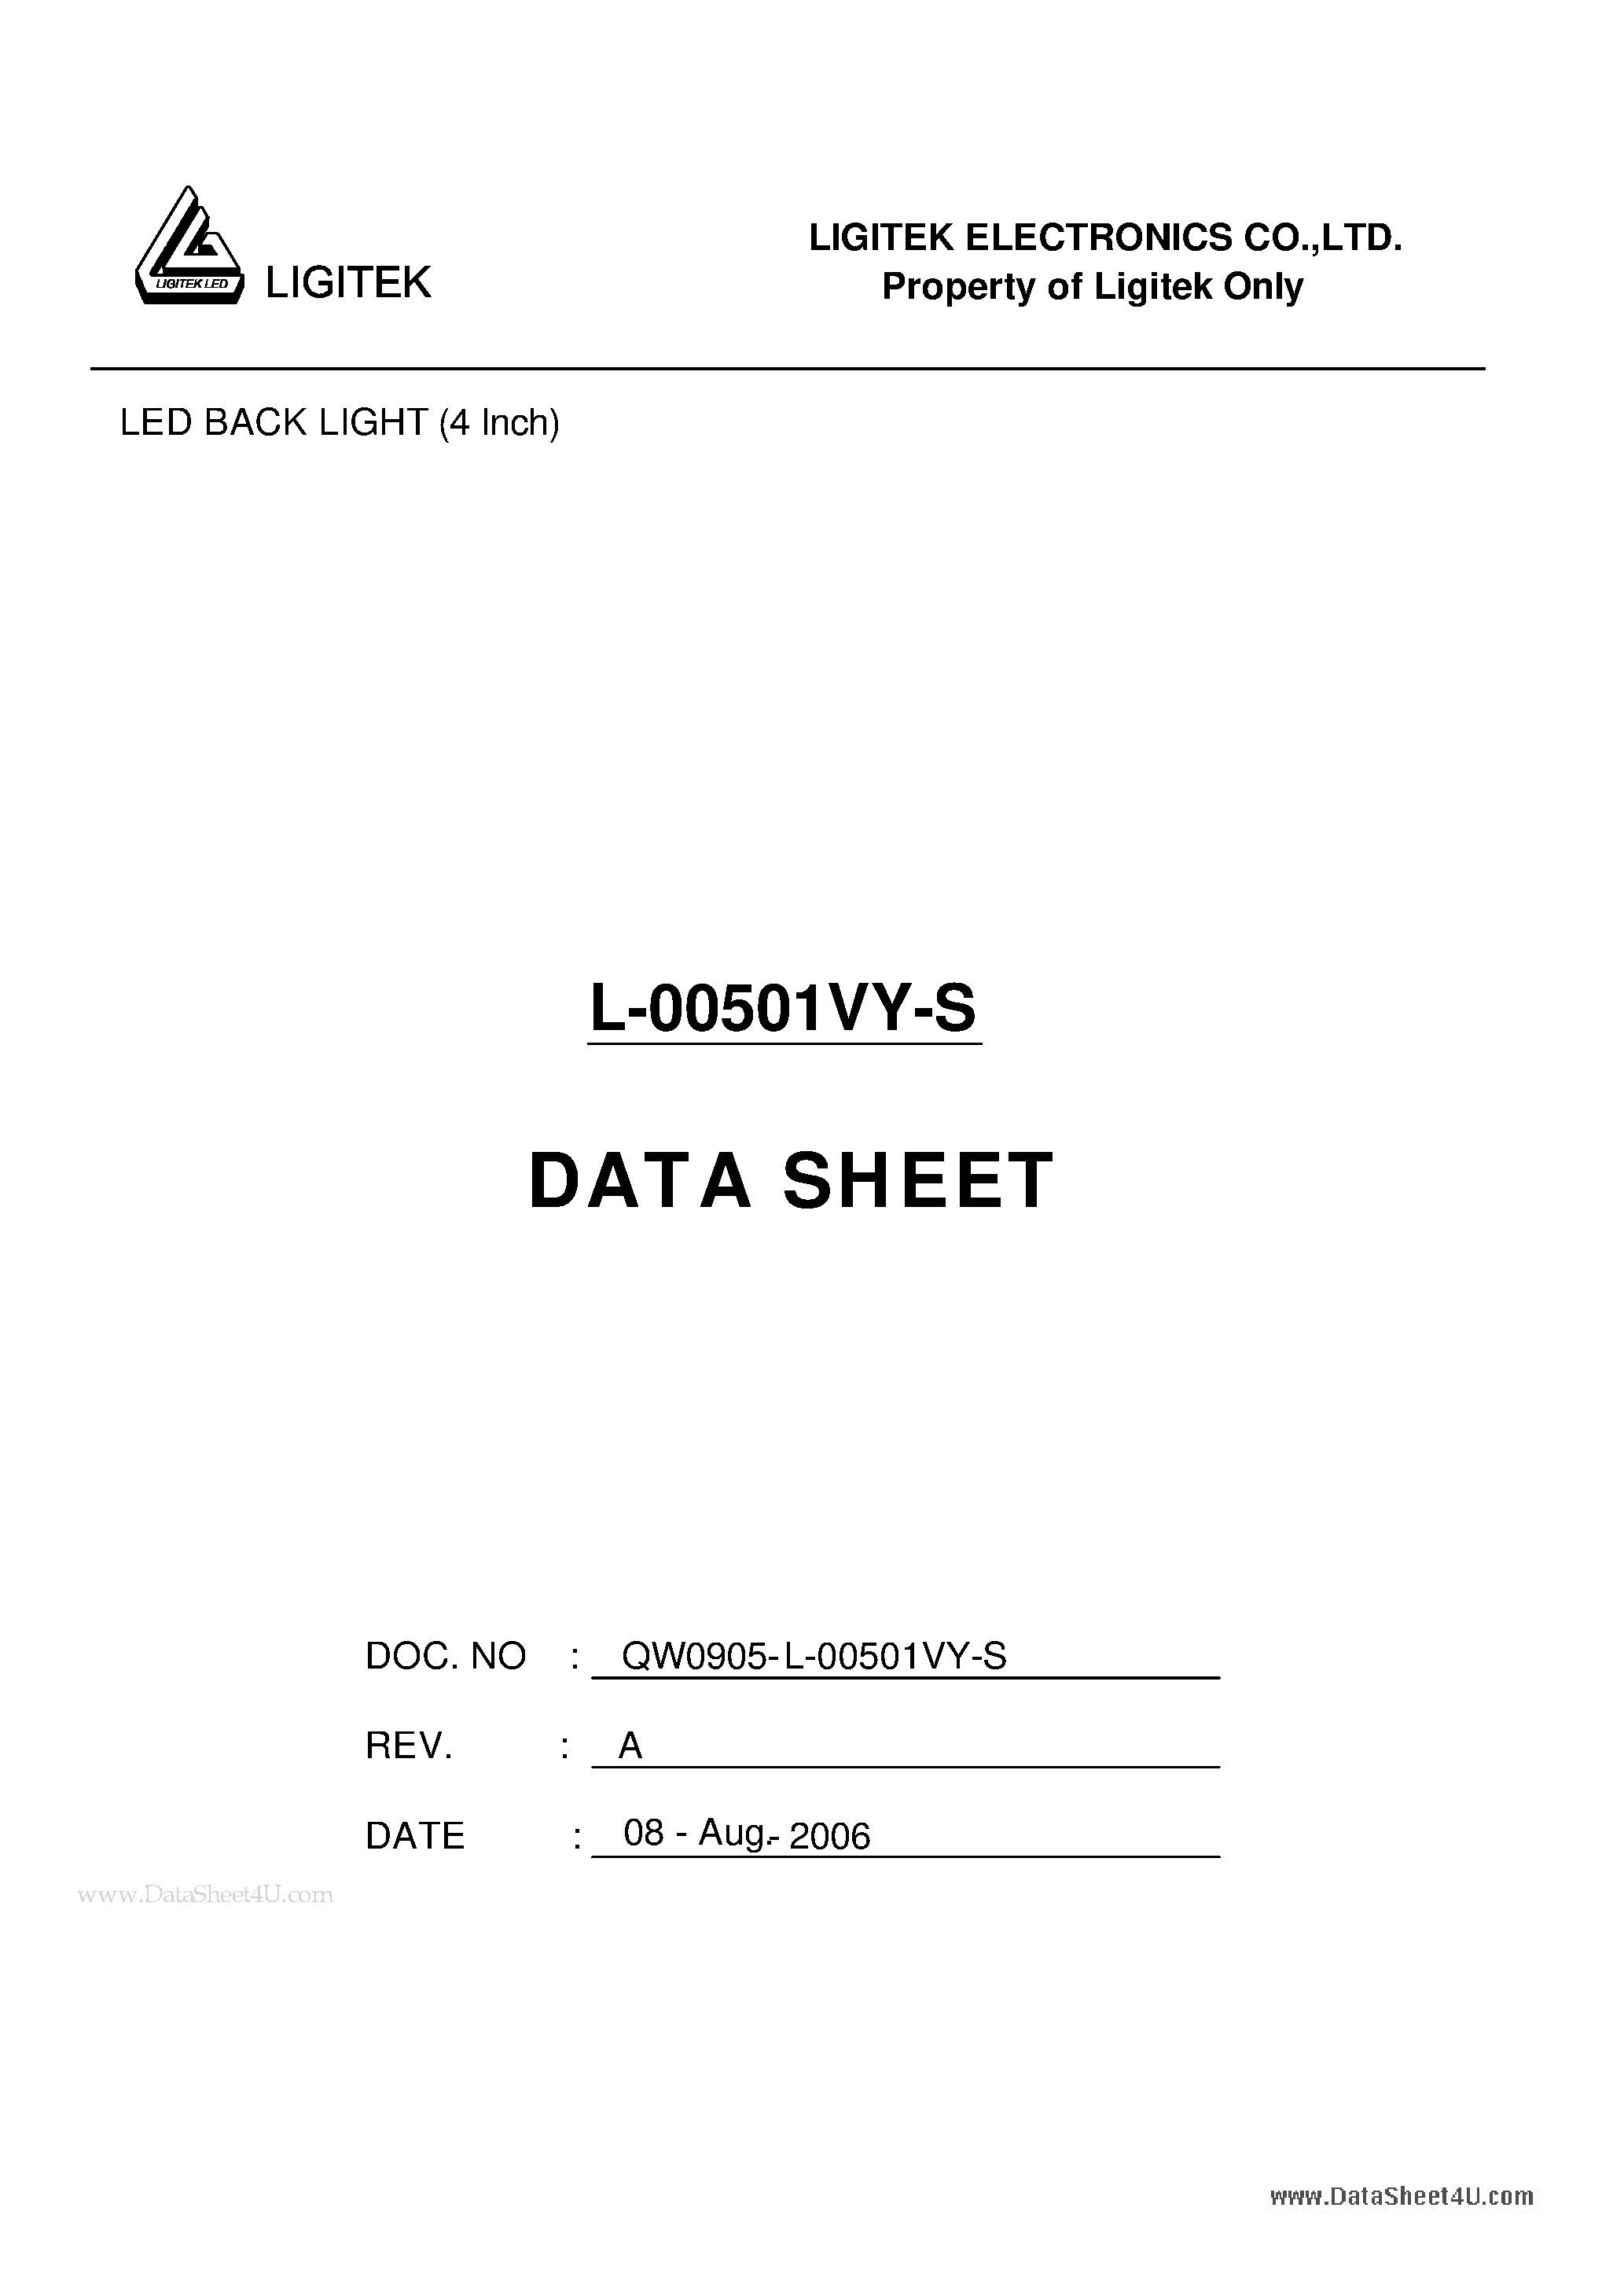 Даташит L-00501VY-S-LED BACK LIGHT (4 Inch) страница 1